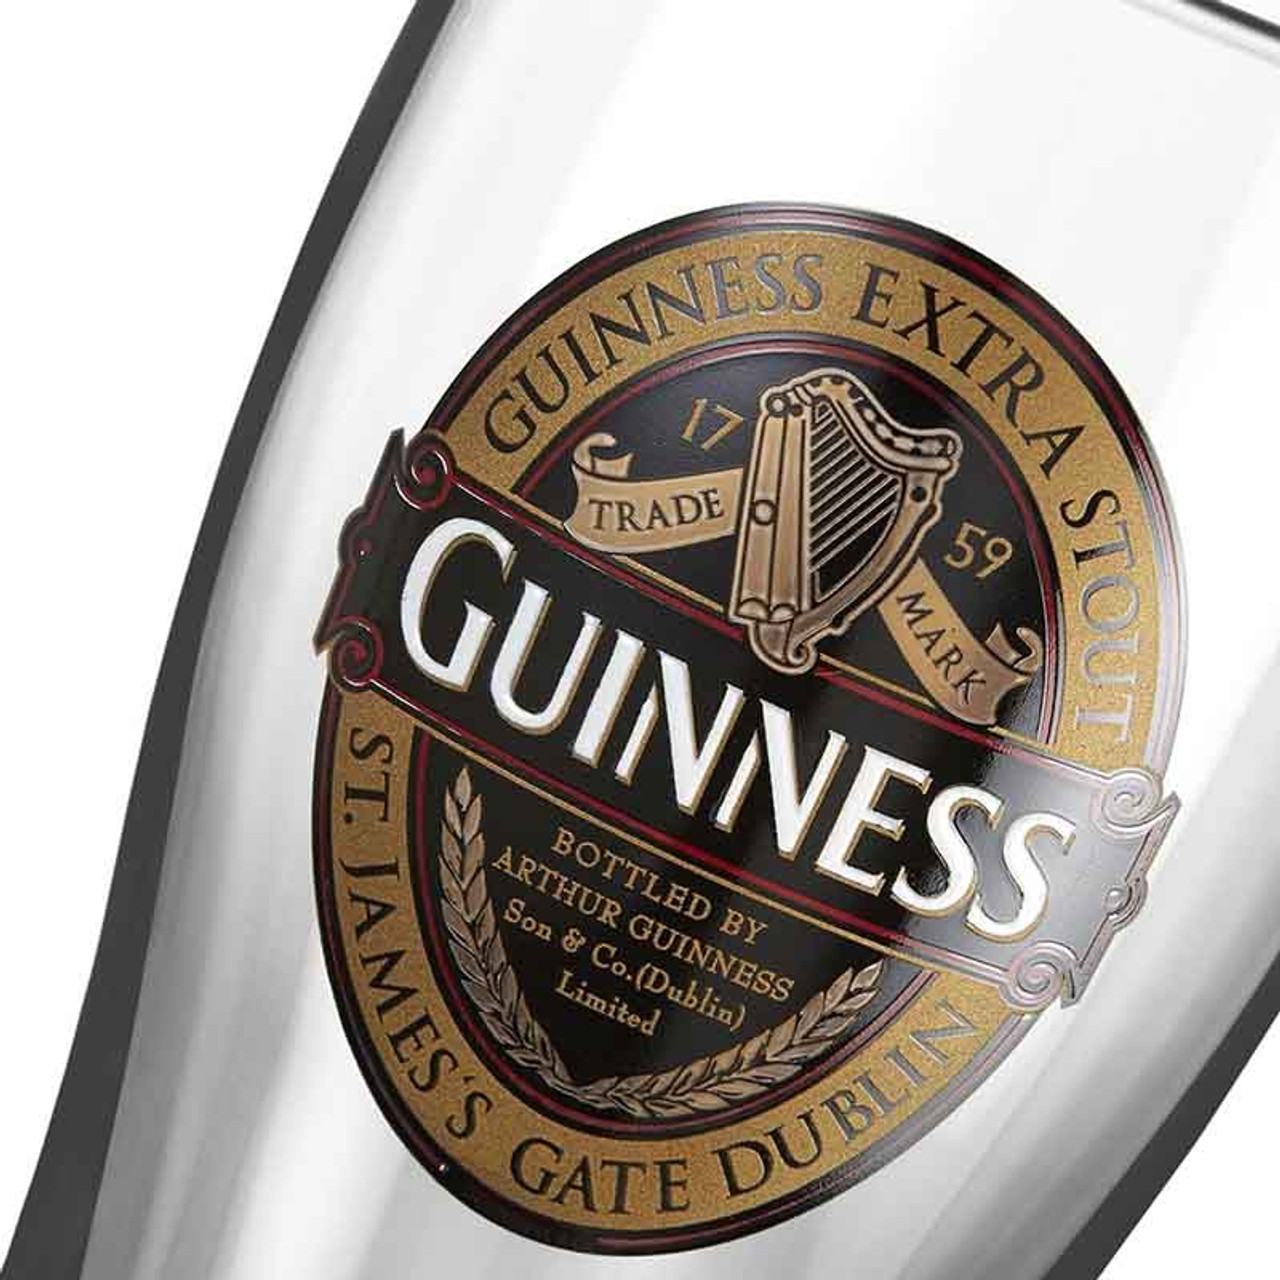 Guinness Set of 2 Embossed 20oz Pint Glasses in Gift Packaging